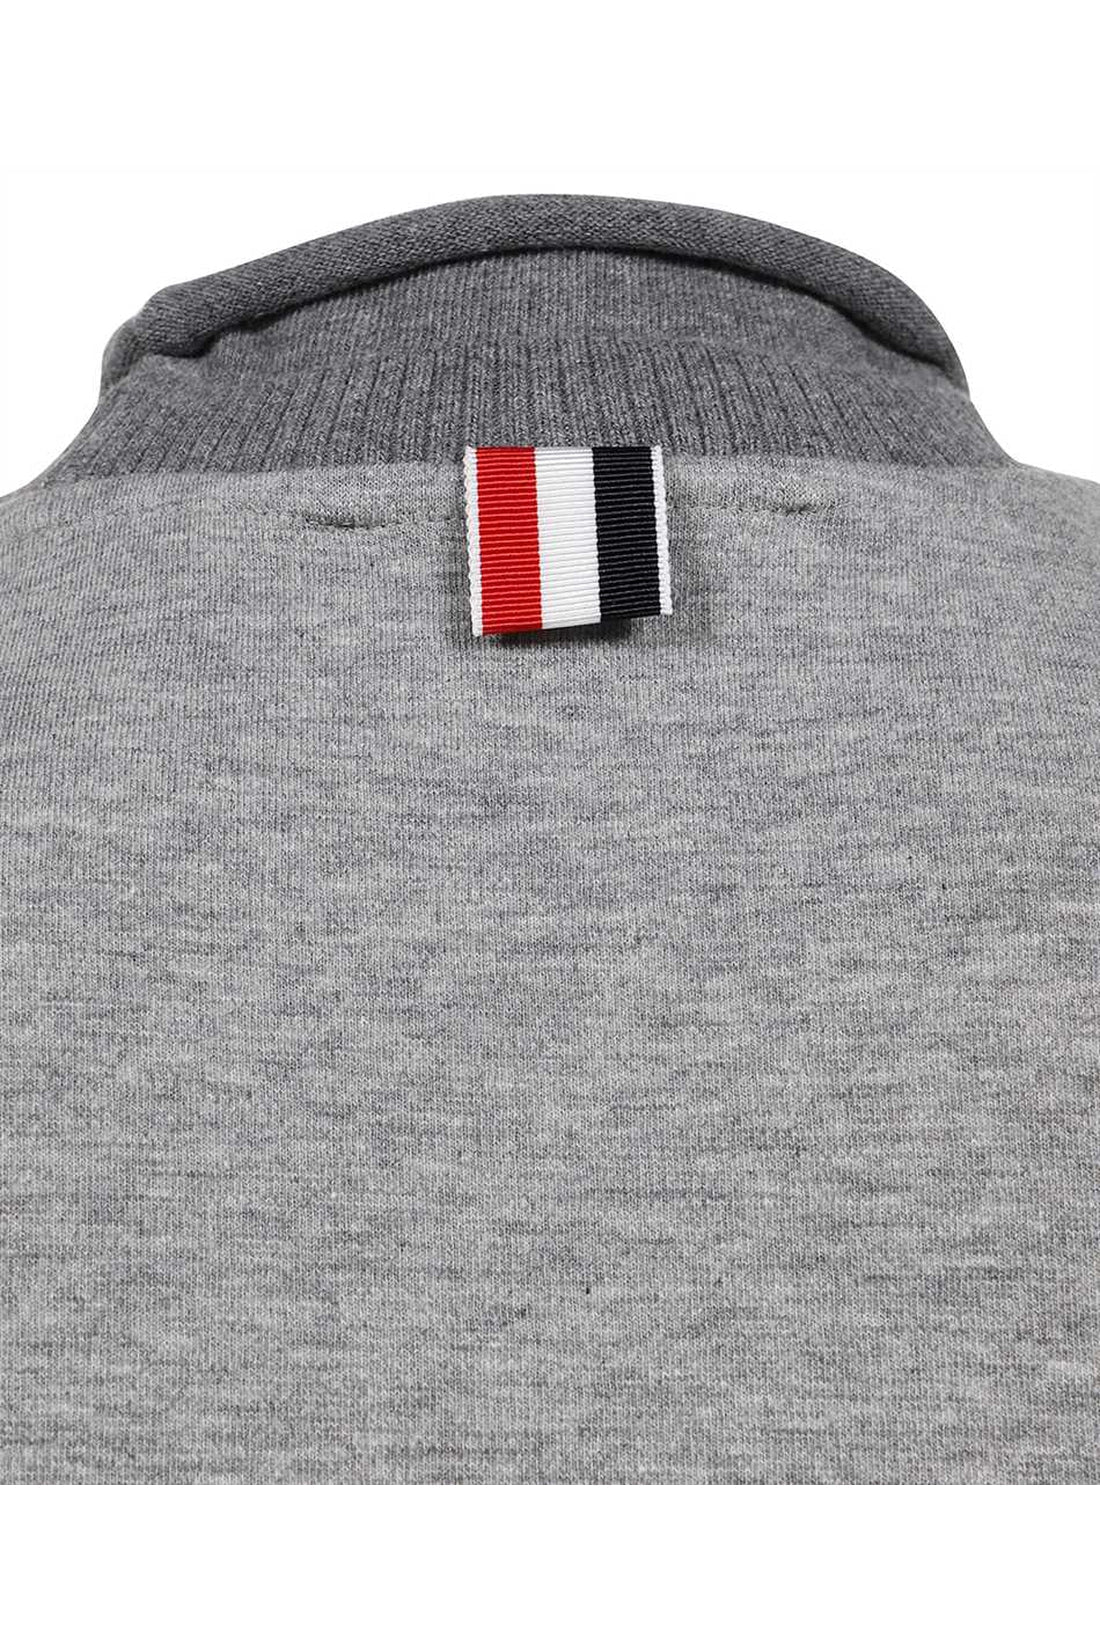 Thom Browne-OUTLET-SALE-Logo cotton t-shirt-ARCHIVIST